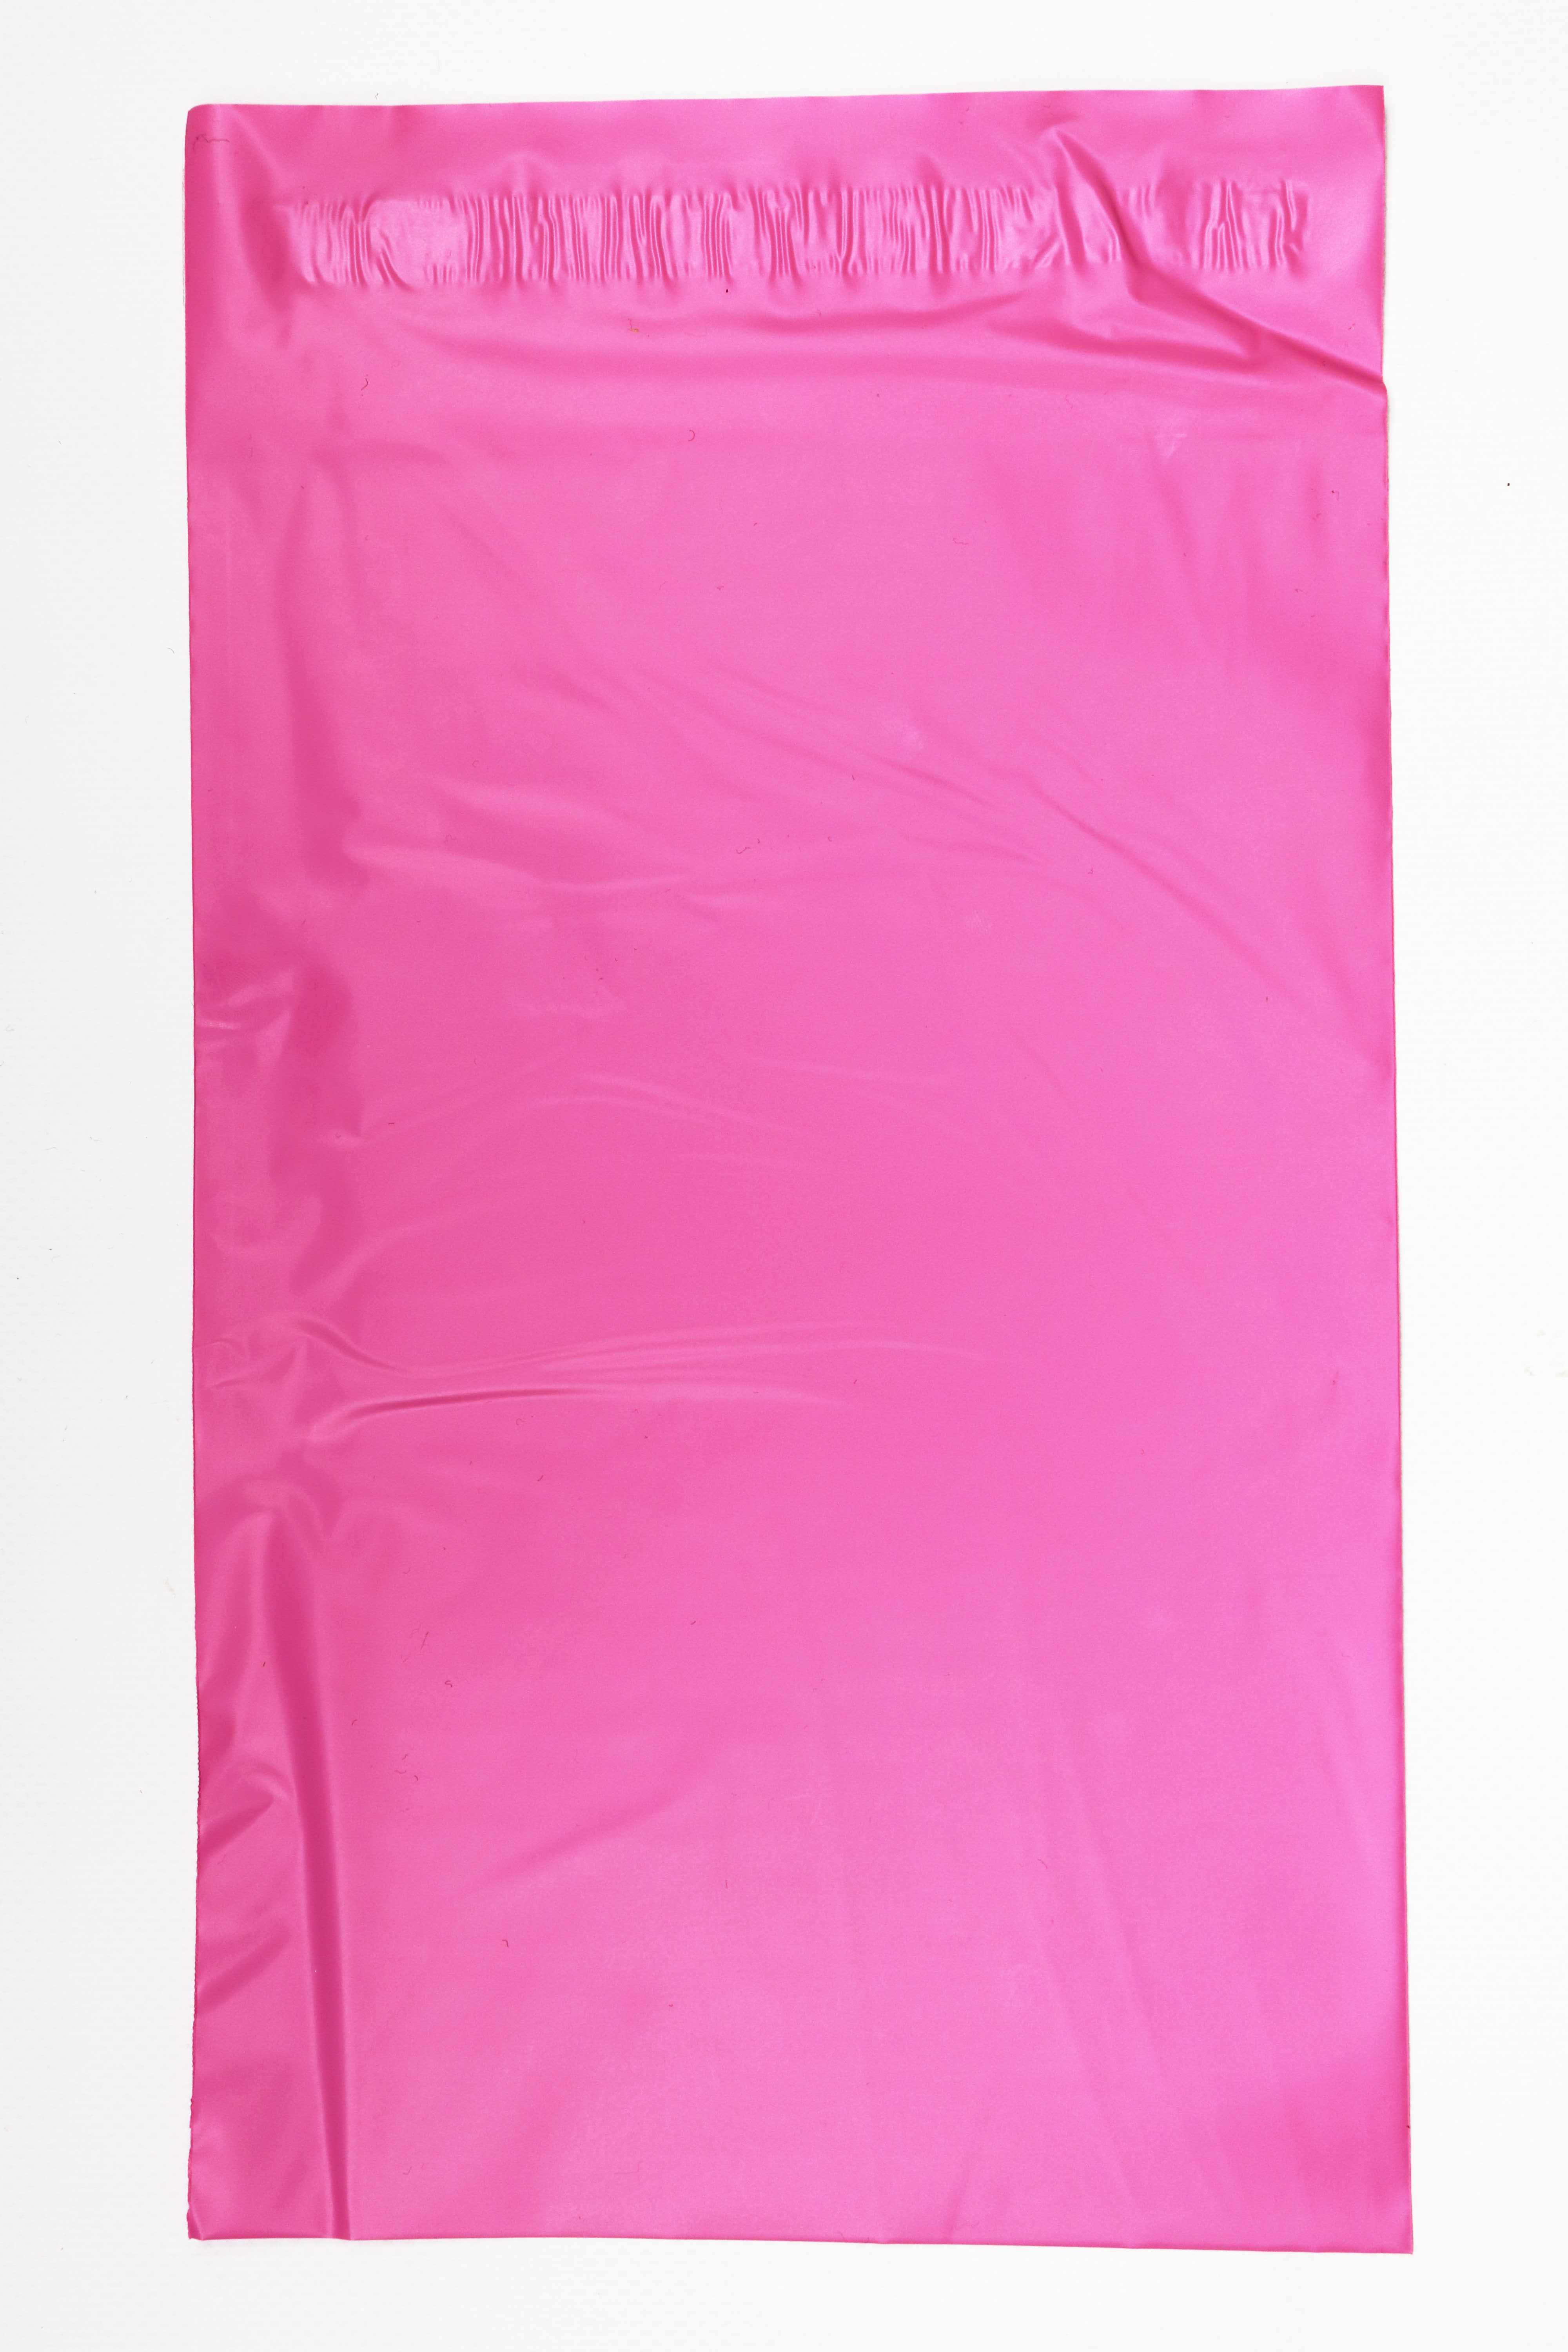 2 opakowania Plastikowa koperta różowa 17,5 x 25,5 cm